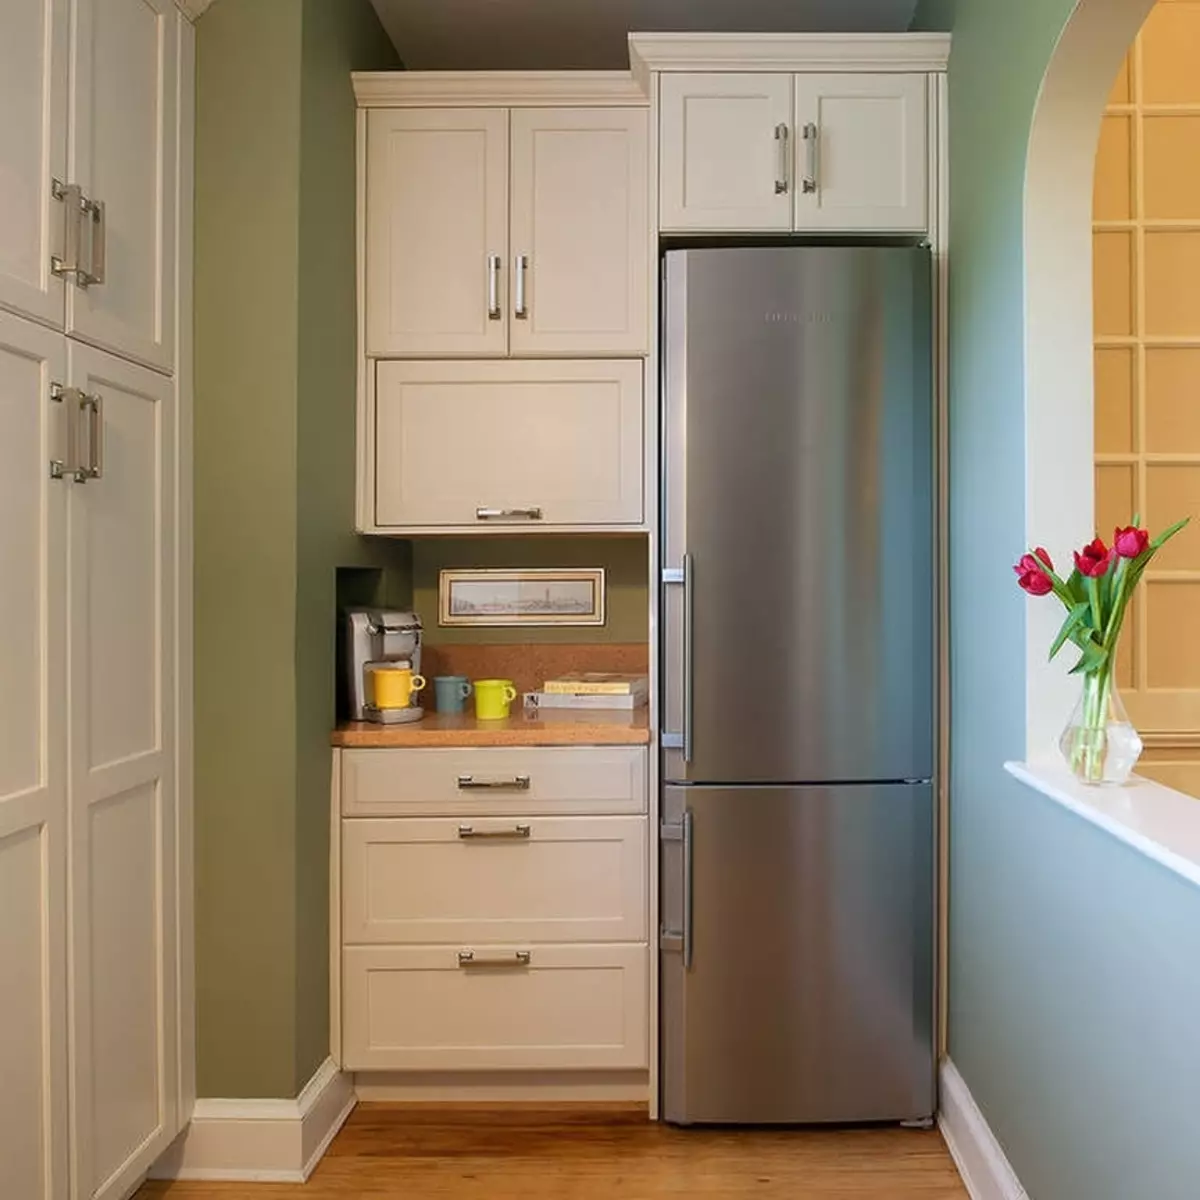 Cociña interior onde poñer a idea de foto do deseño do frigorífico